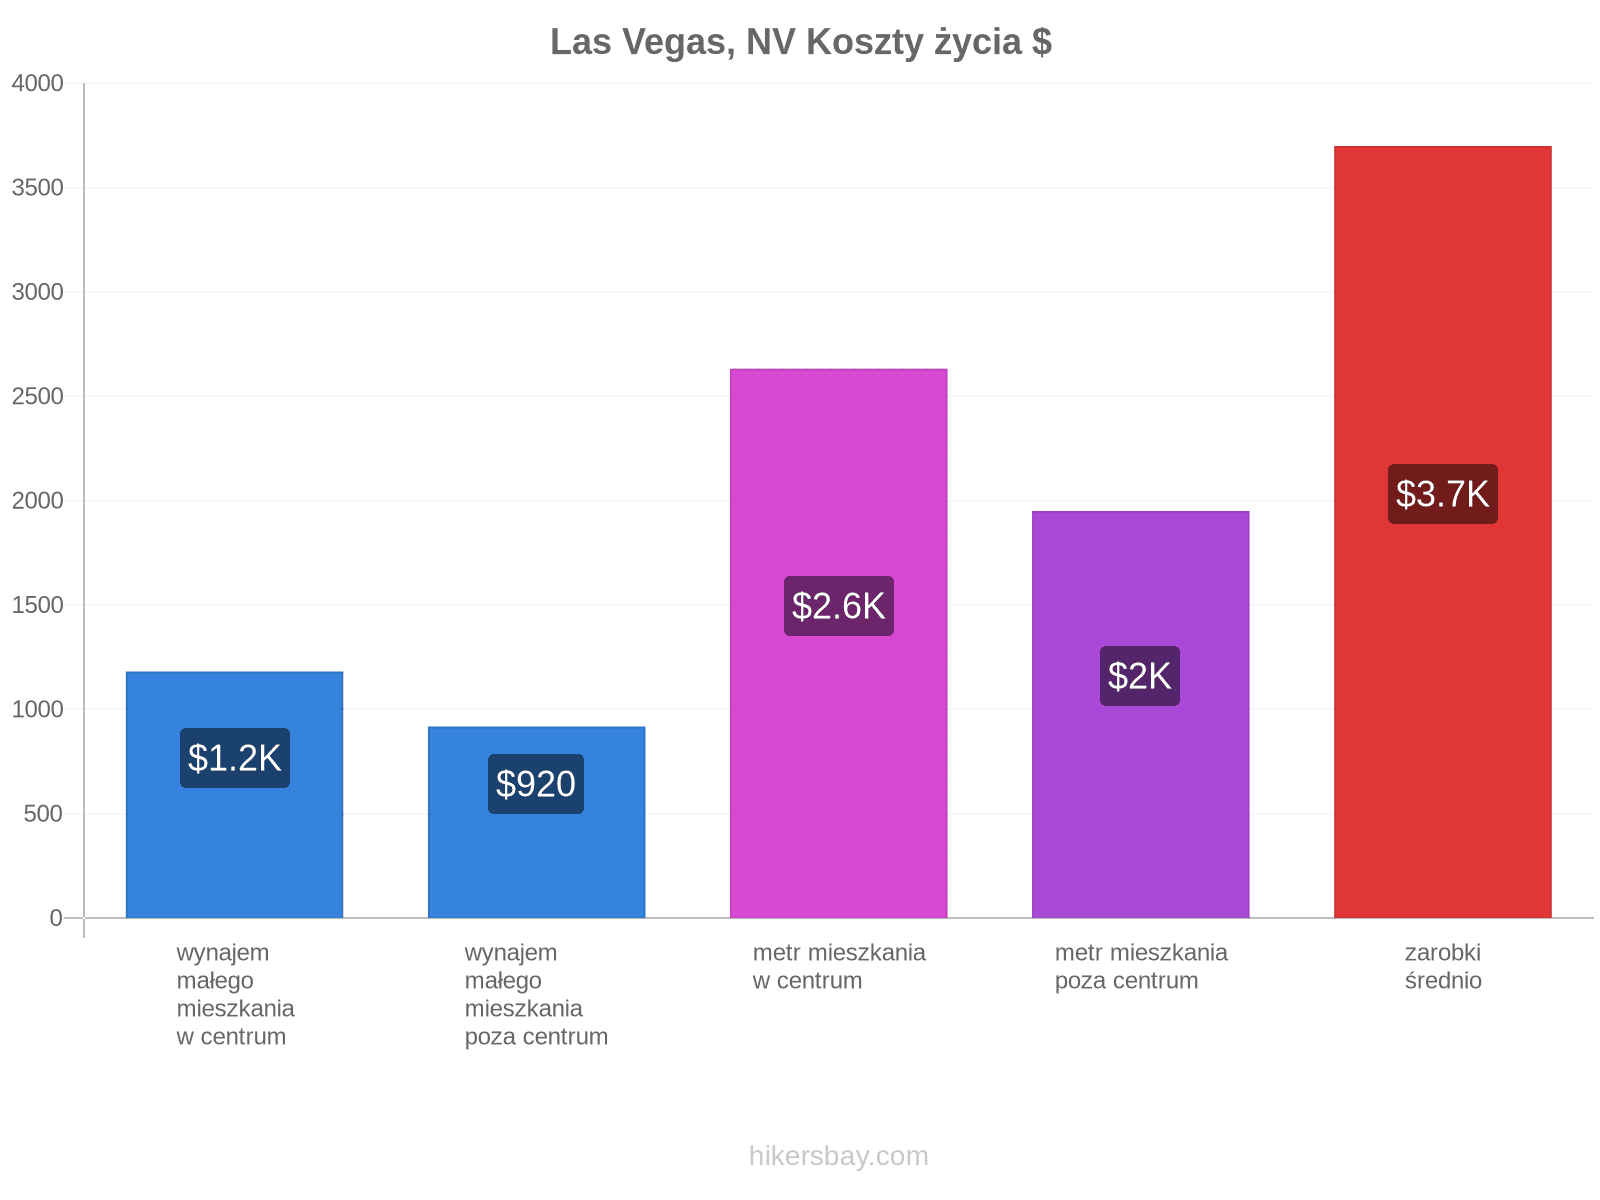 Las Vegas, NV koszty życia hikersbay.com